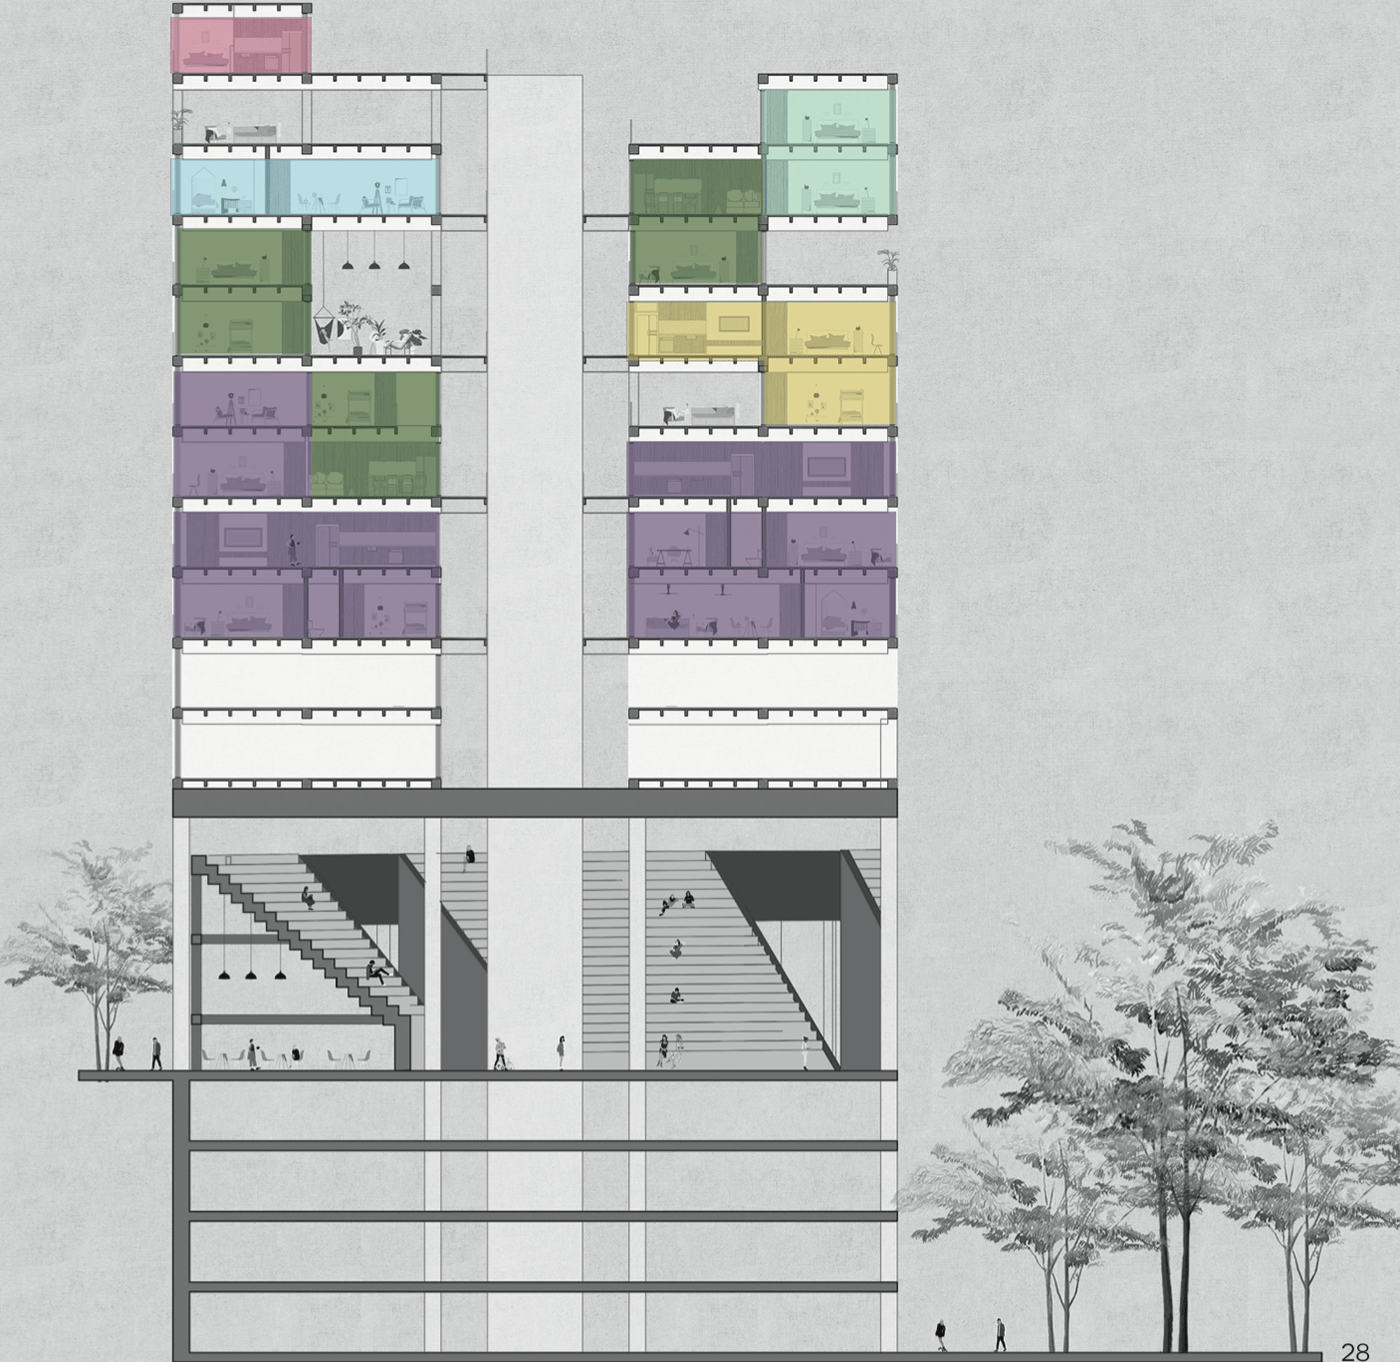 achitectural design architecture collective housing